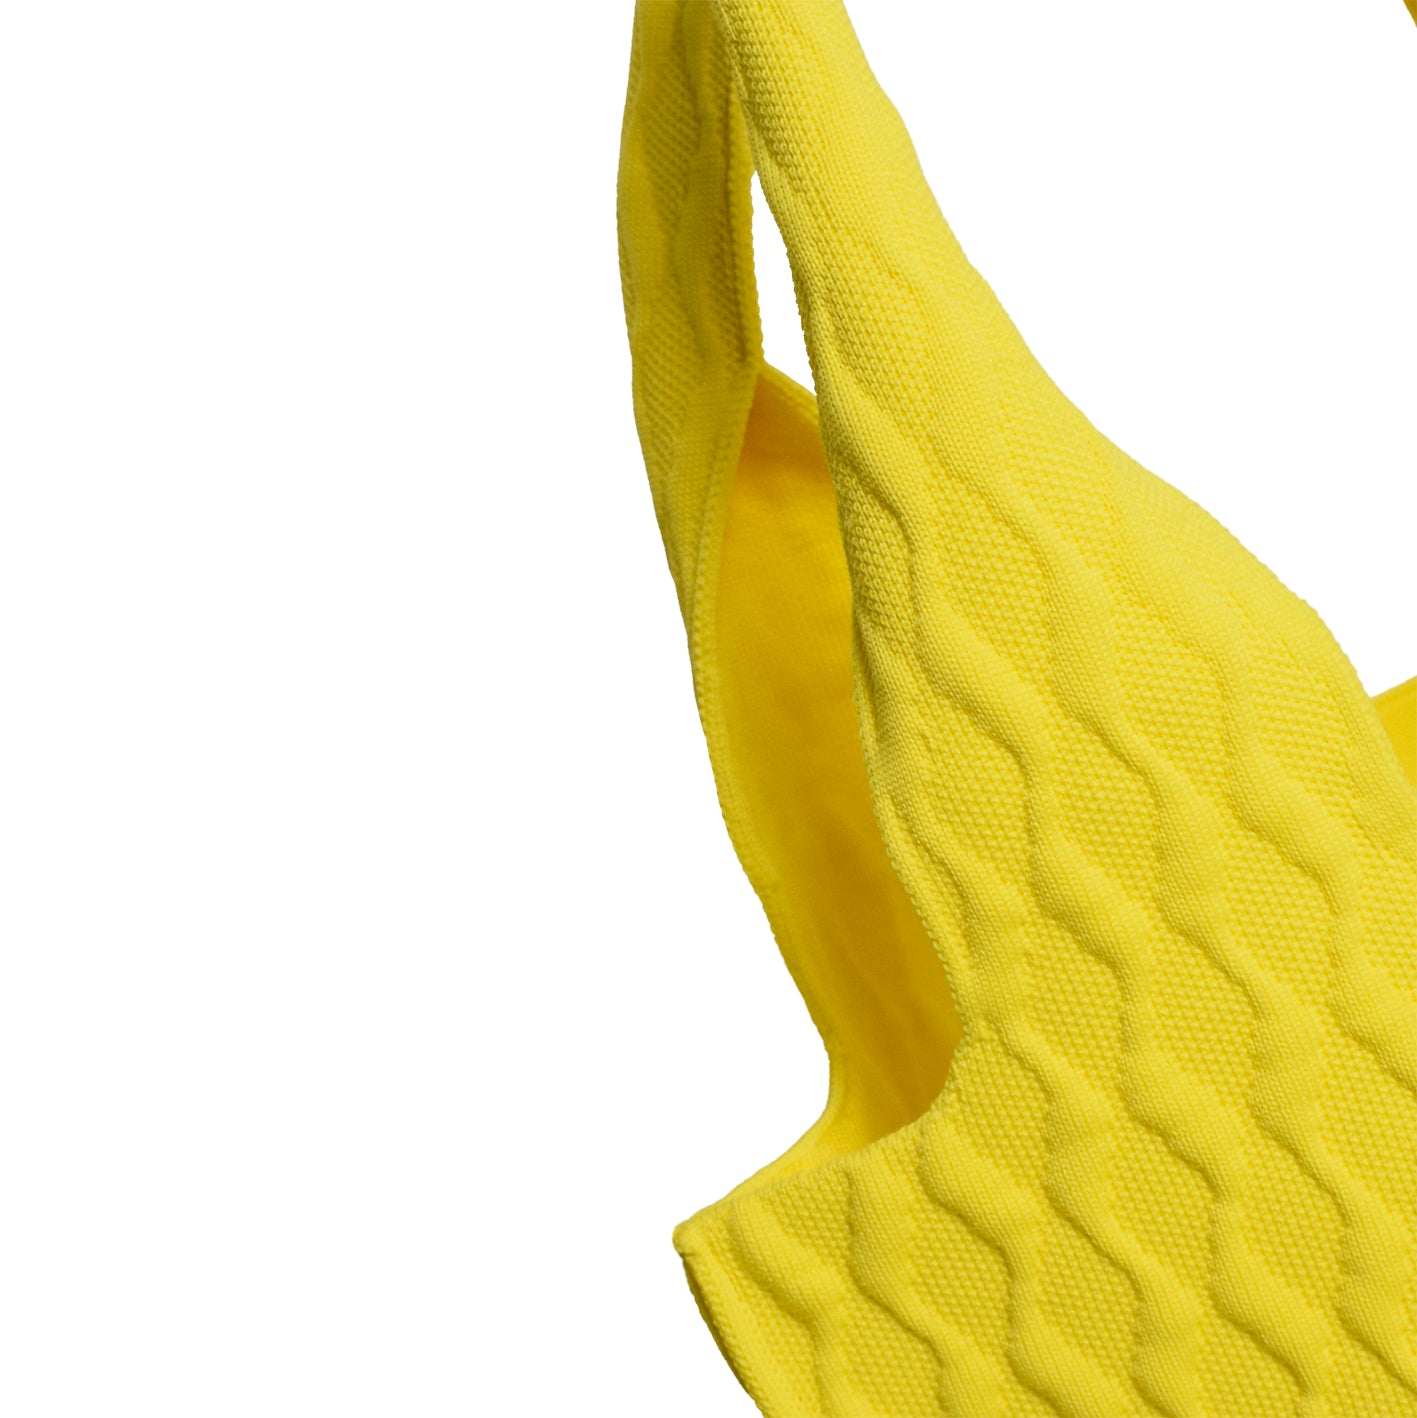 REDSTARS ECO-BAG Illuminating Yellow Handtasche Shopper aus recycelten Plastik Flaschen